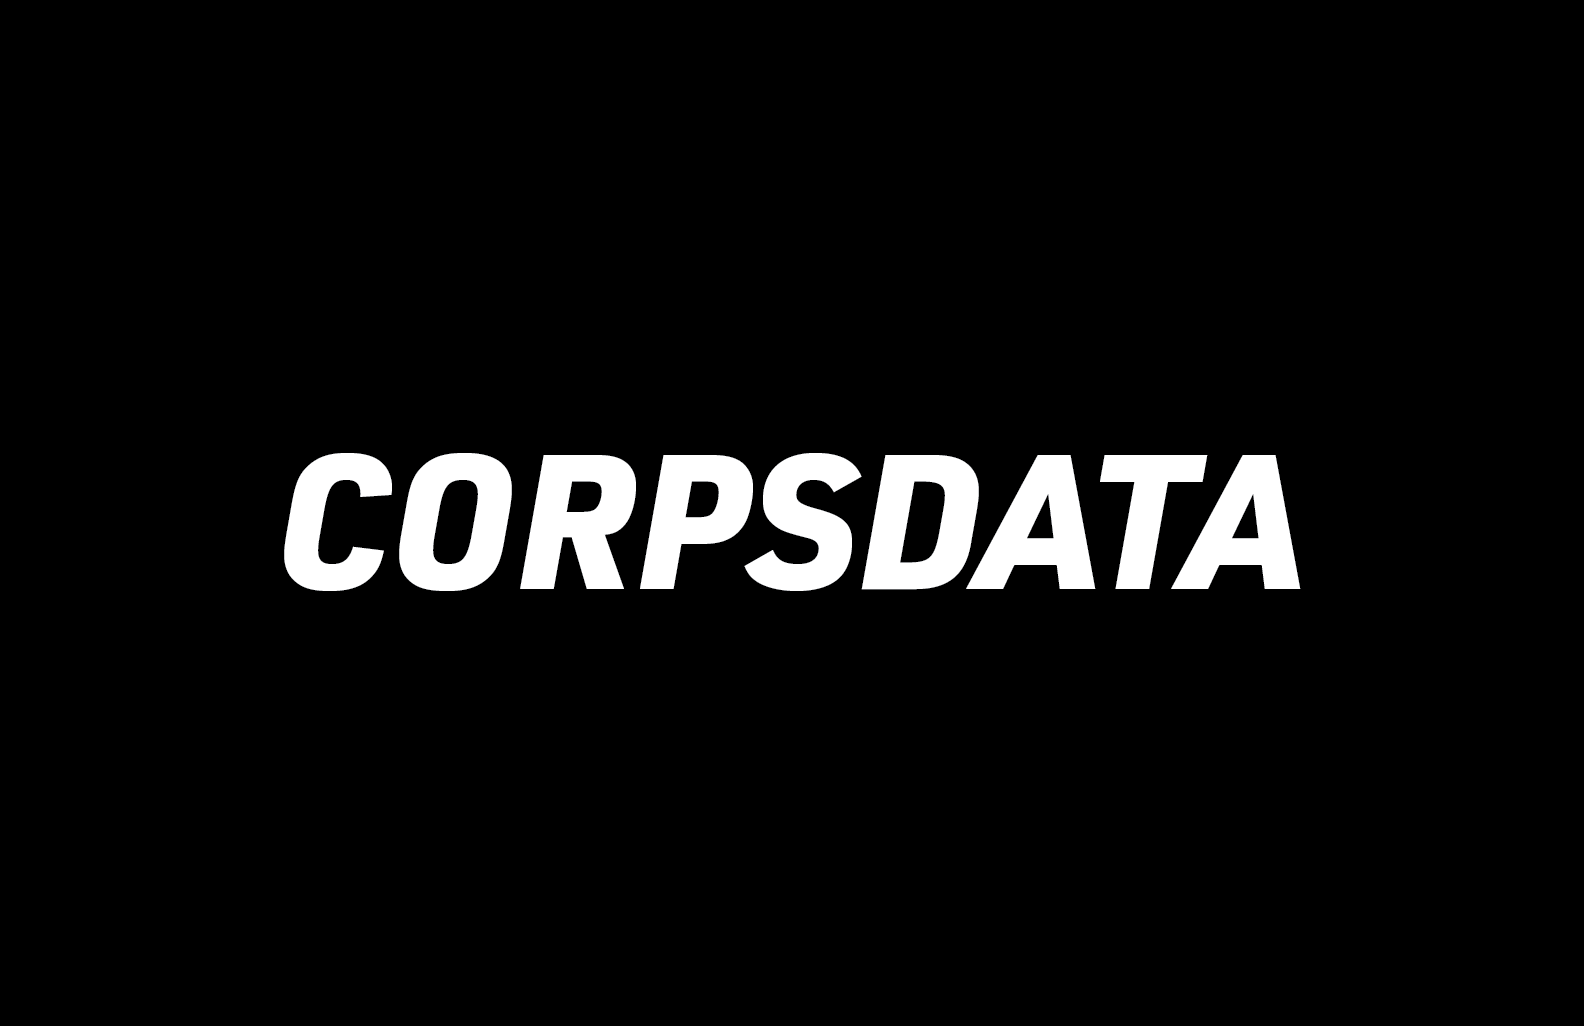 Corpsdata-01.png